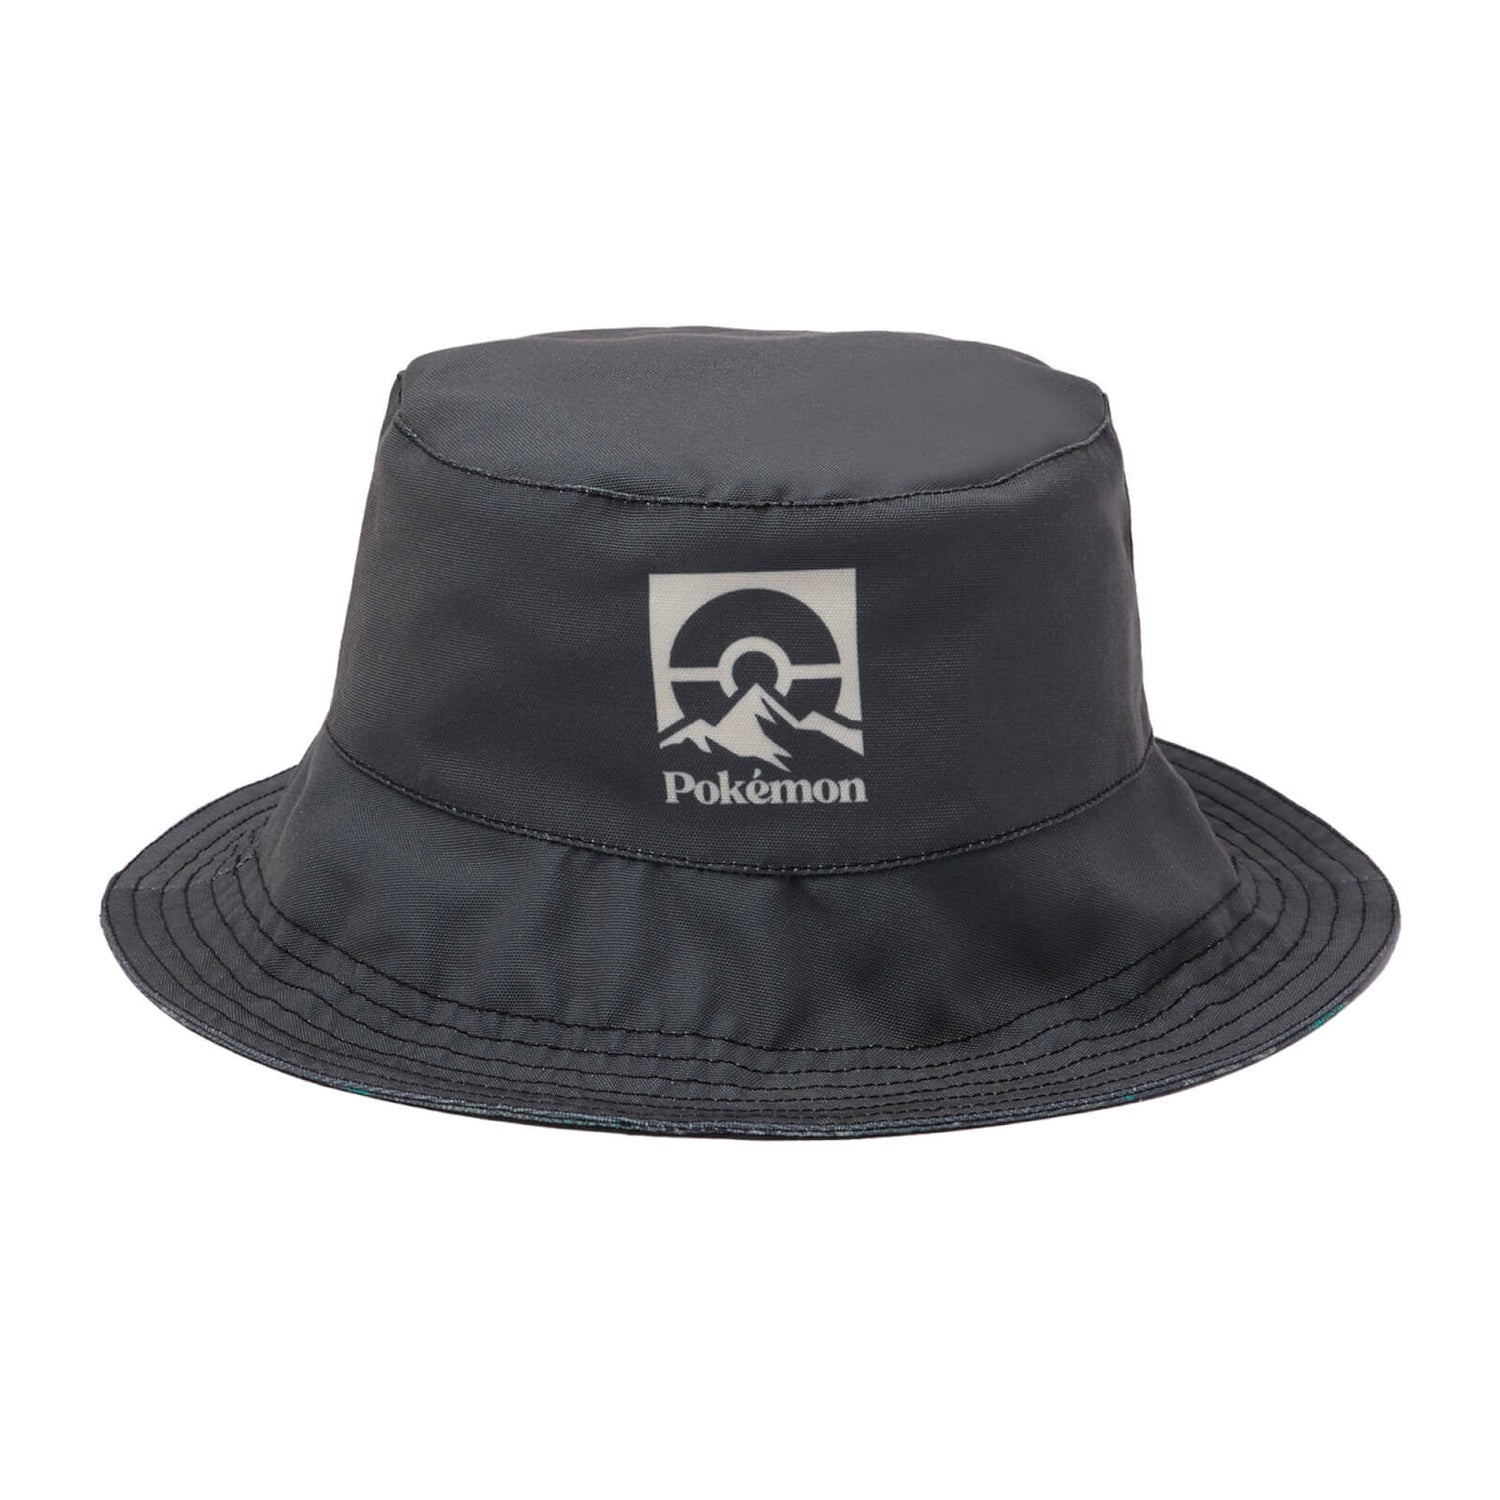 Pokémon Explorer Bucket Hat